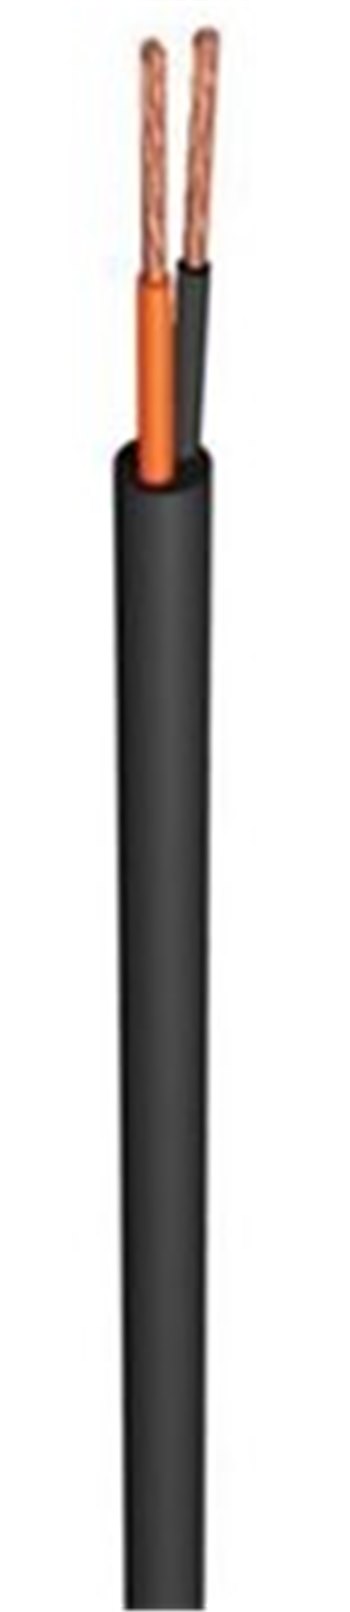 Акустический кабель BX 3  двухжильный, чёрный (2x1.5)